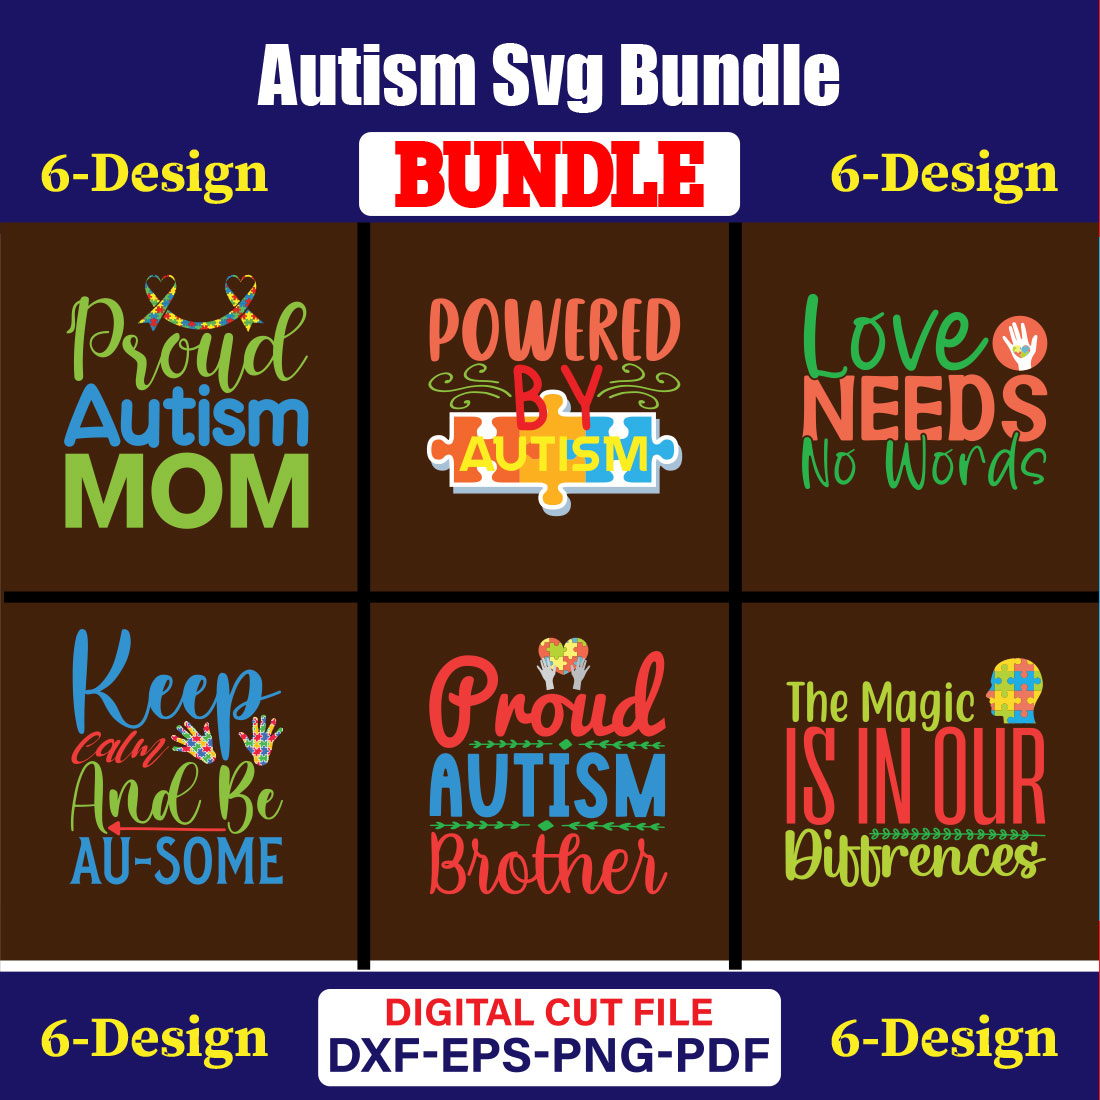 Autism Day T-shirt Design Bundle Vol- 10 cover image.